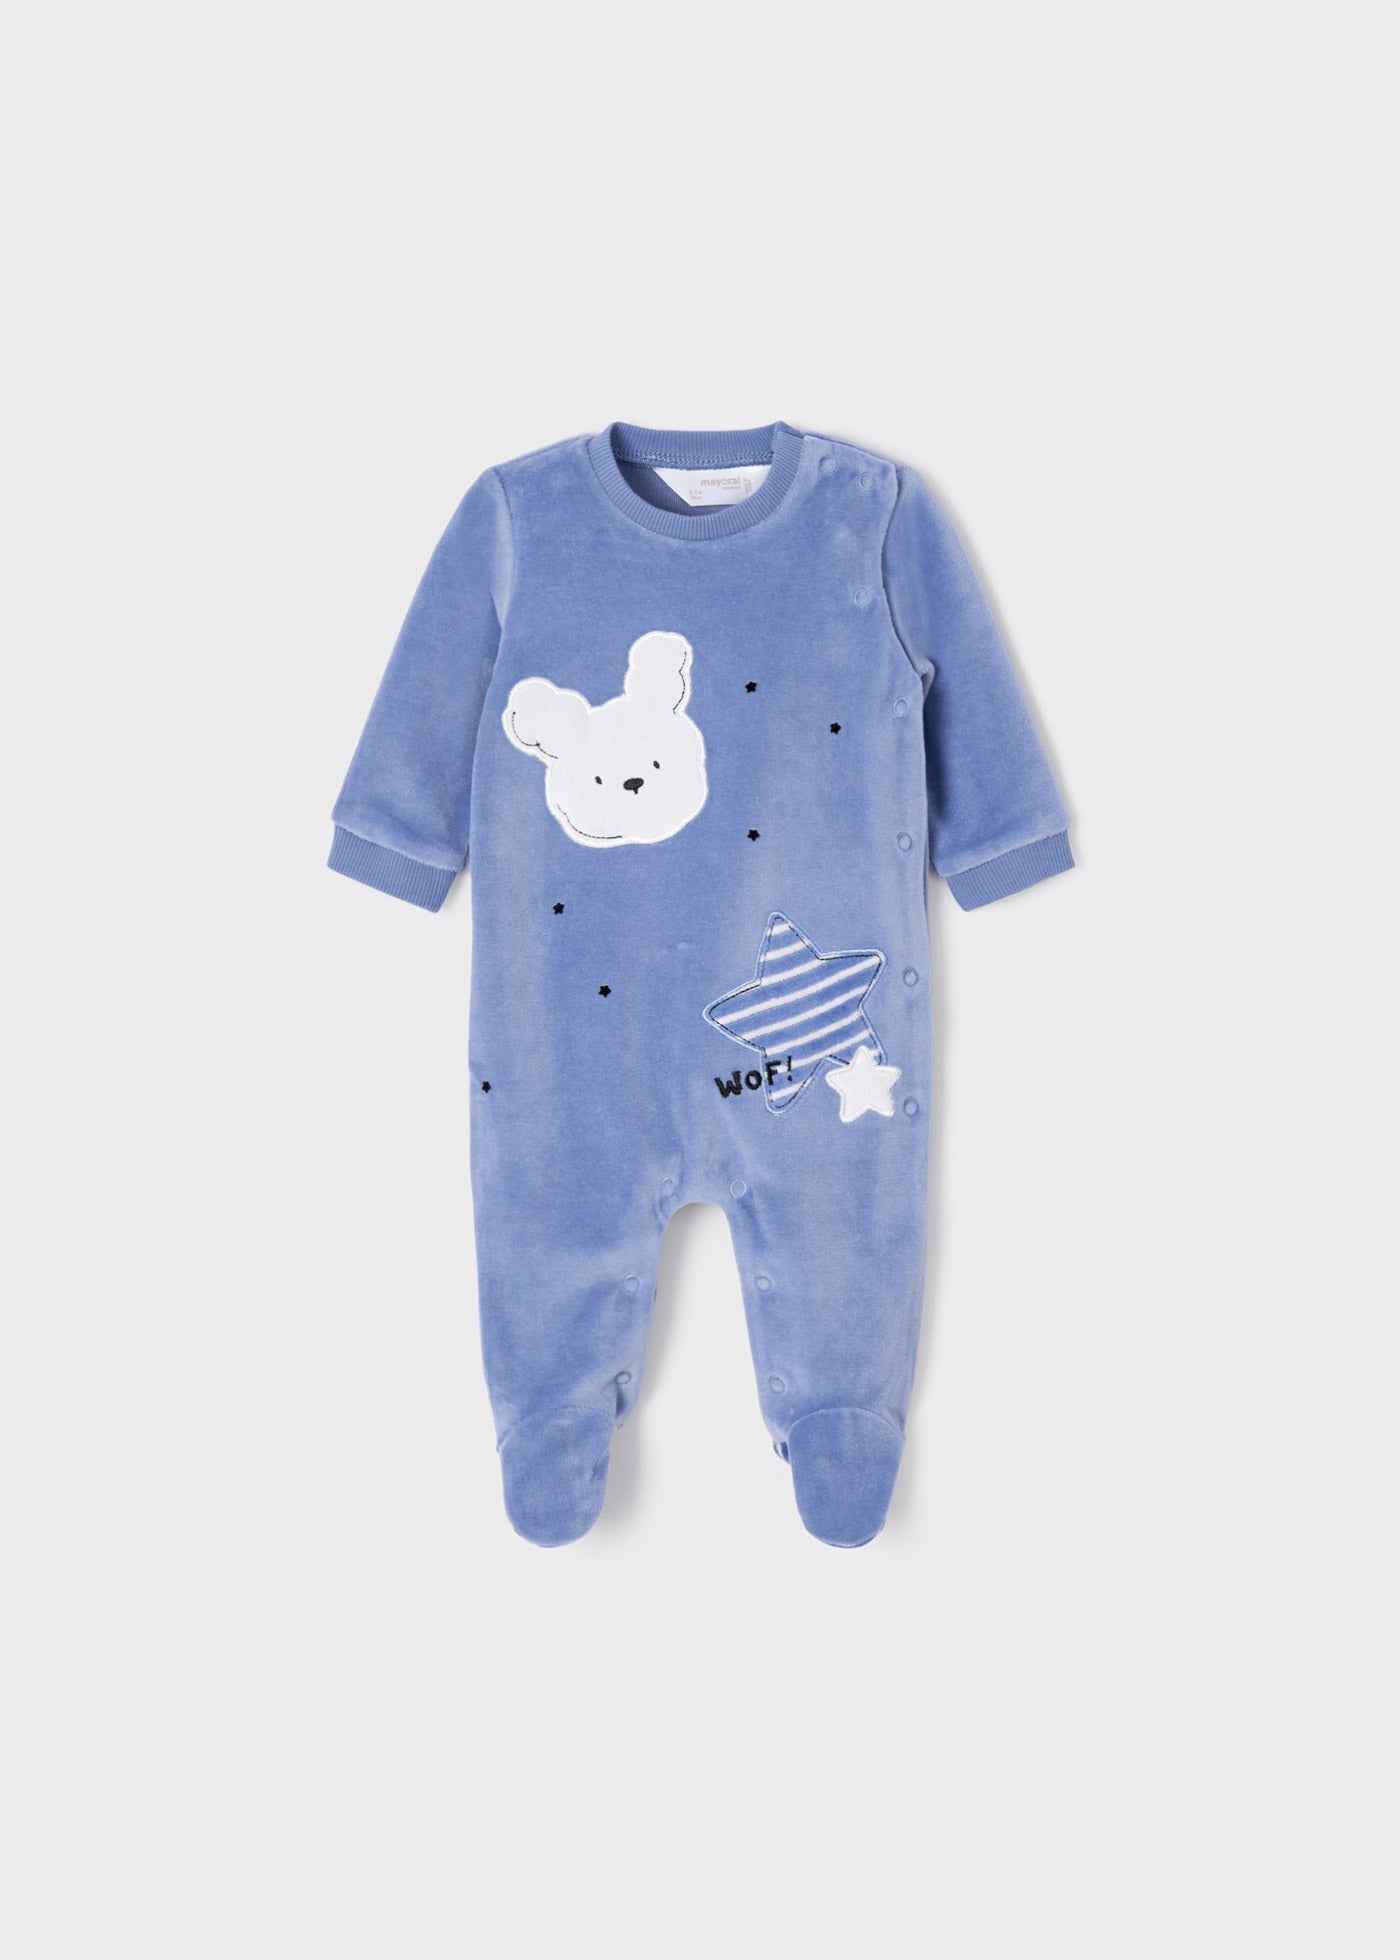 Abbigliamento per bambini , Set 2 pigiami velluto neonato ECOFRIENDS MAYORAL 2632 blu - BabyBimbo 0-16, abbigliamento bambini